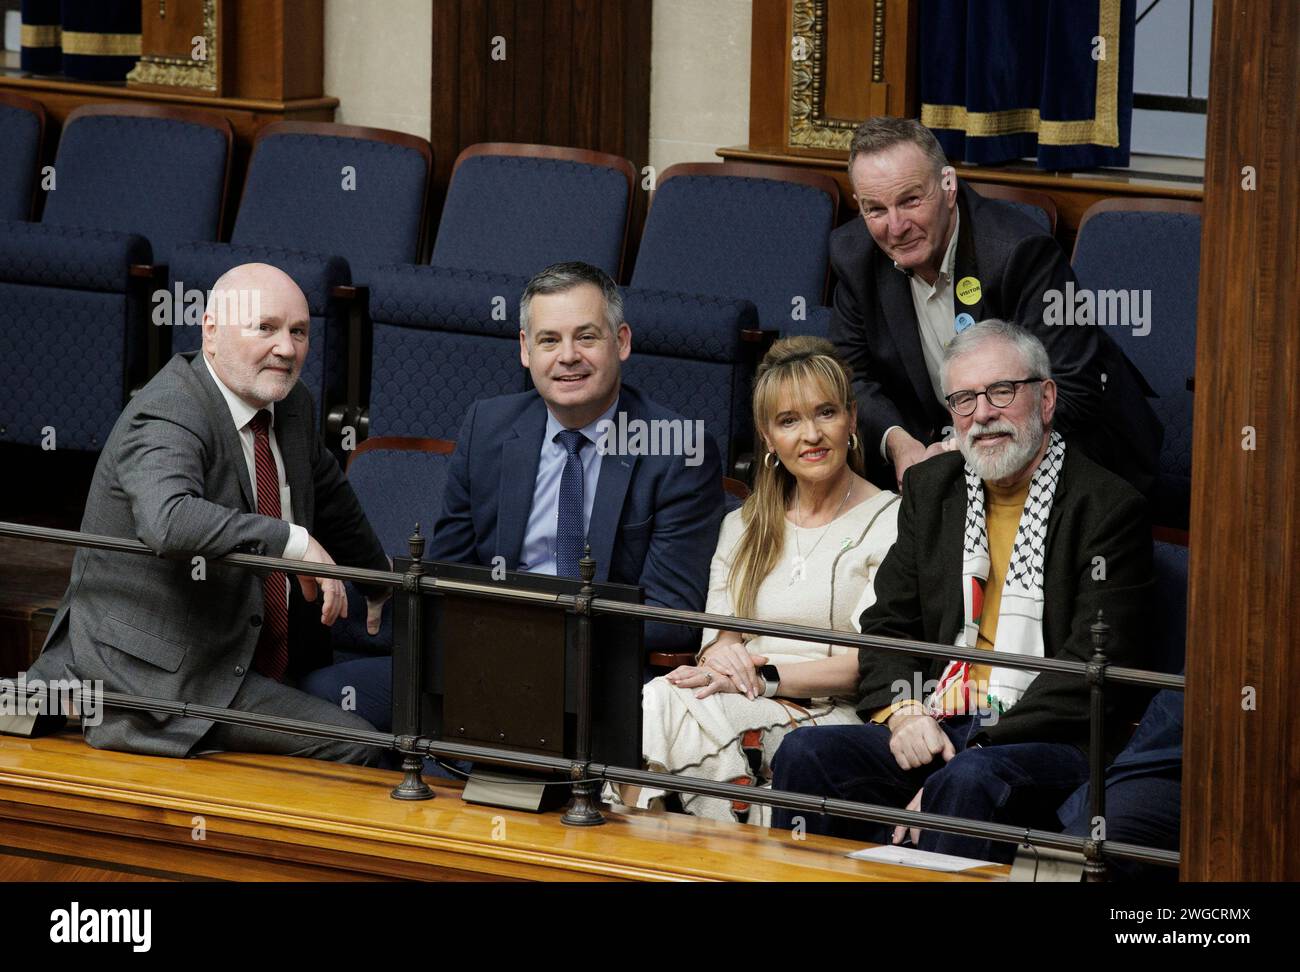 (Da sinistra) l'ex presidente dell'Assemblea dell'Irlanda del Nord Alex Maskey, il Sinn Fein TD Pearse Doherty, l'ex eurodeputata del Sinn Fein Martina Anderson, il consigliere del Sinn Fein JJ Magee e l'ex presidente del Sinn Fein Gerry Adams nella tribuna pubblica dell'Assemblea dell'Irlanda del Nord. Data immagine: Sabato 3 febbraio 2024. Foto Stock